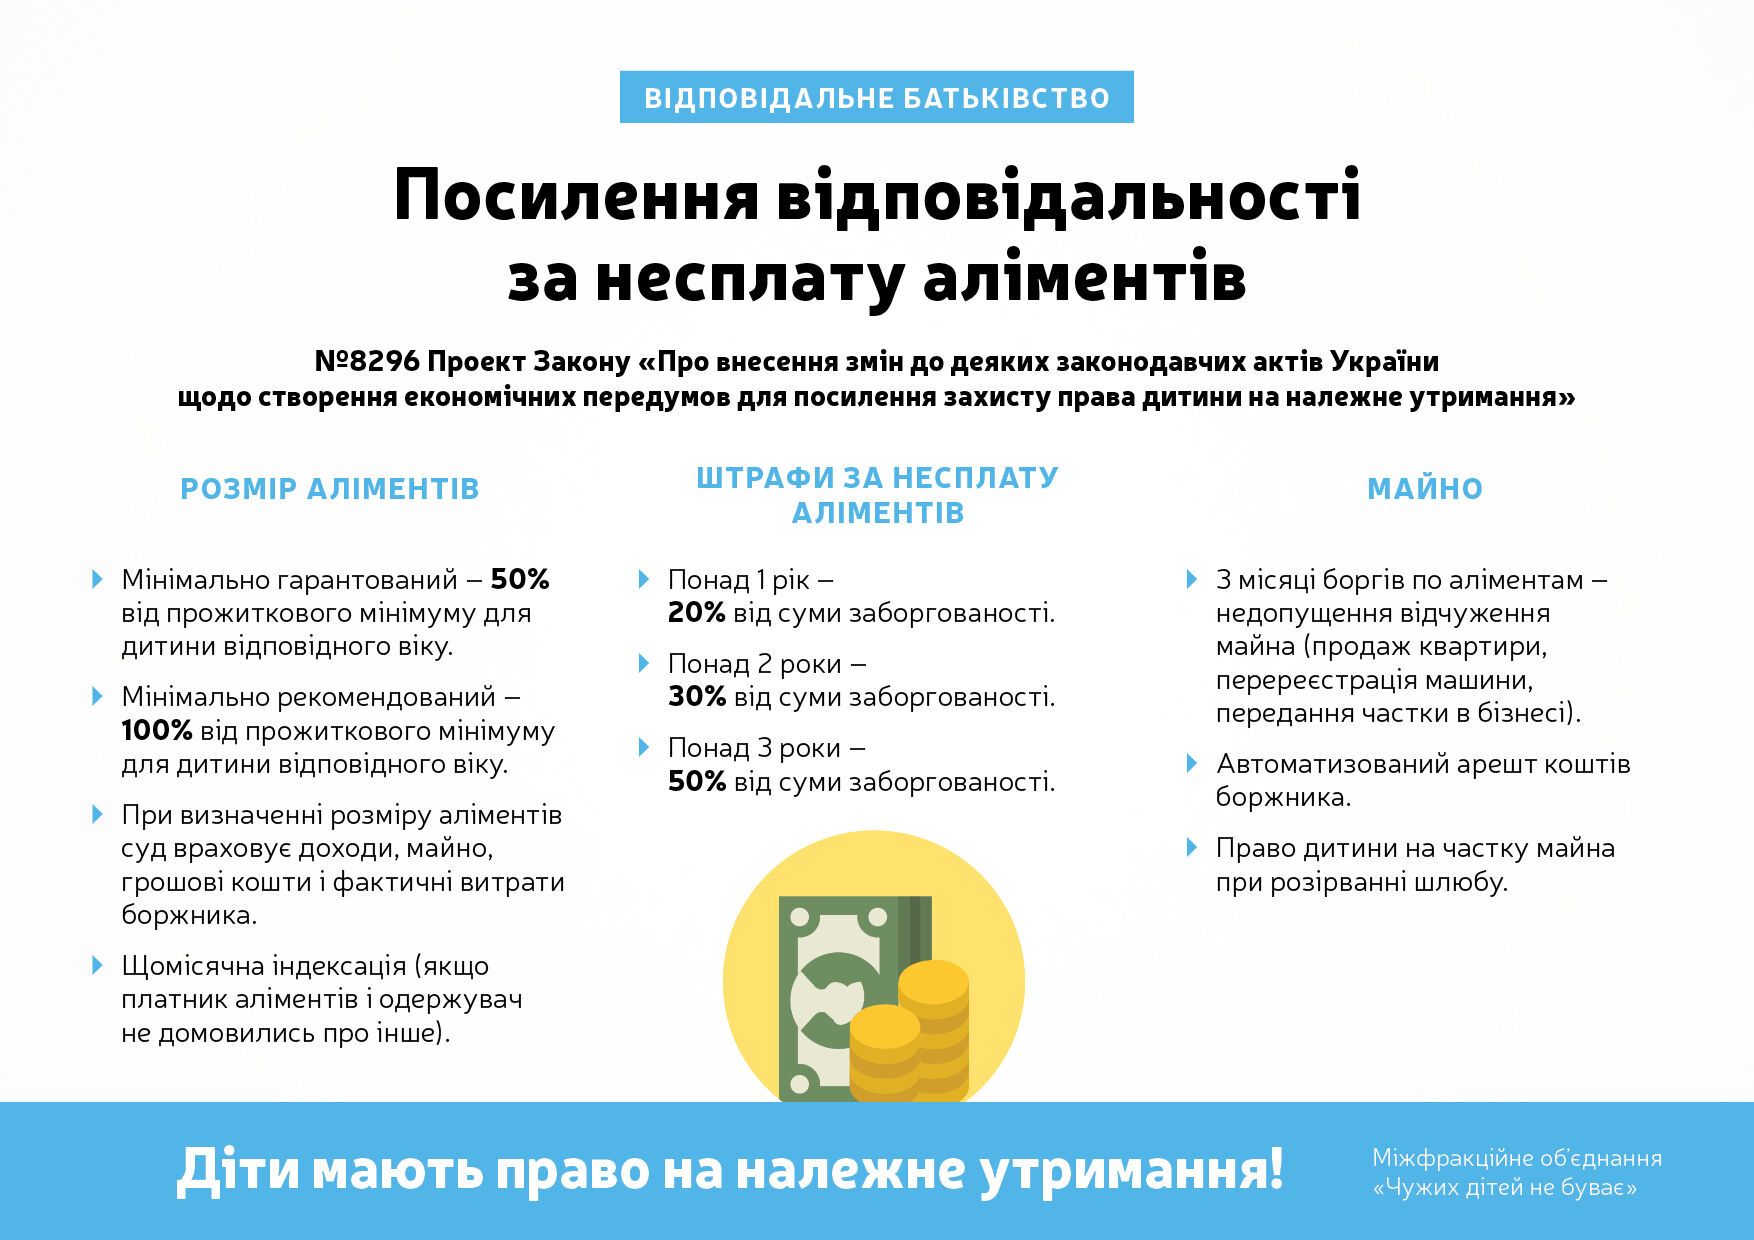 "Чужих детей не бывает": Луценко анонсировала изменения в Украине